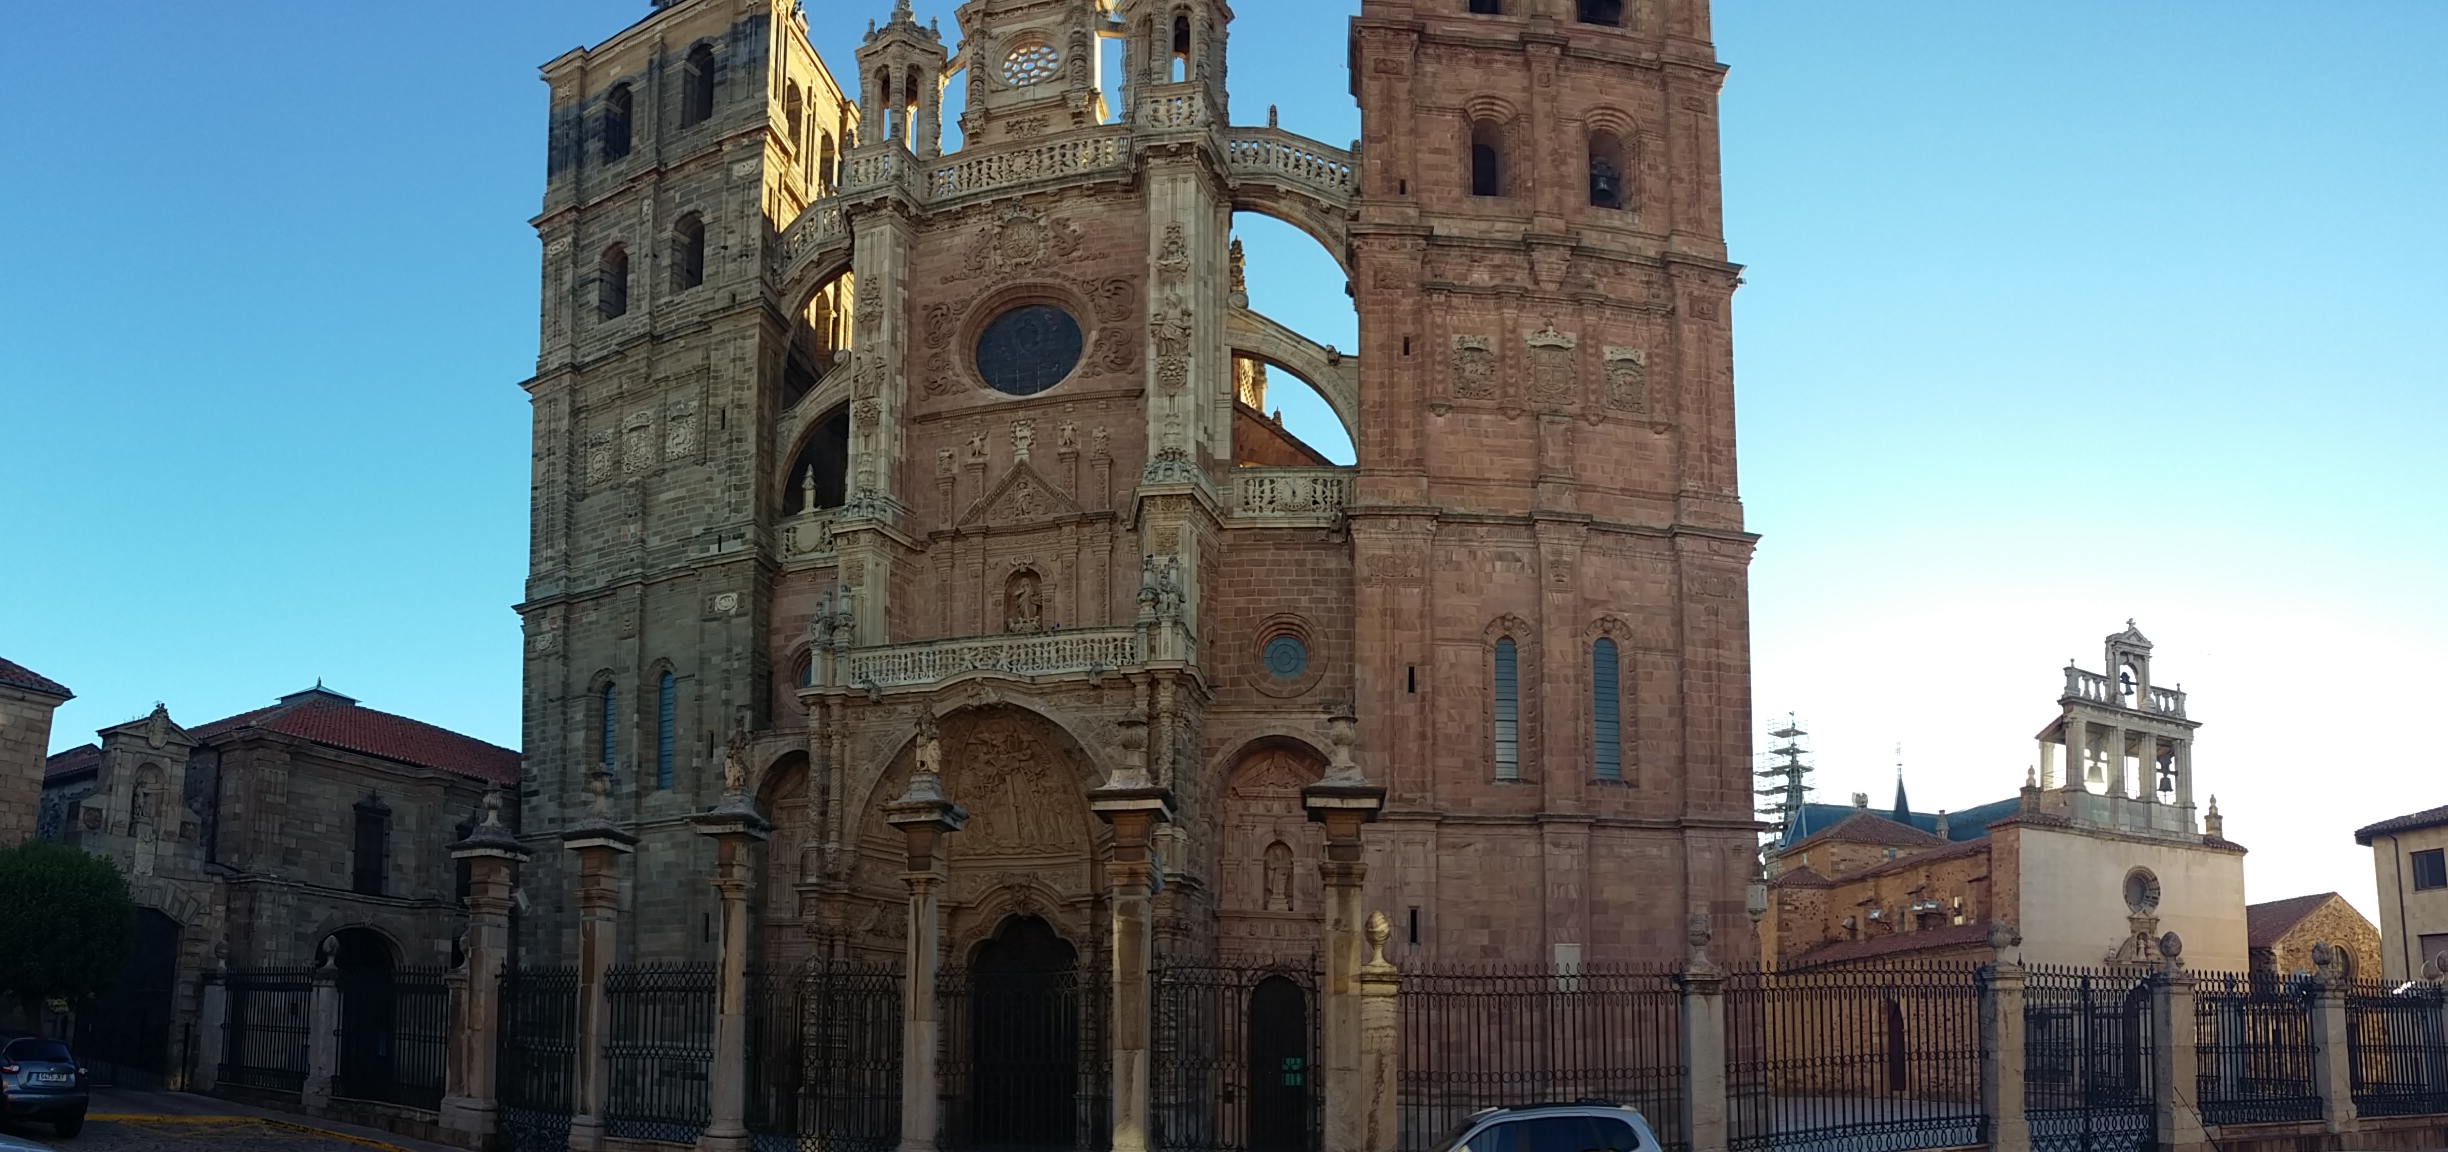 Astorga Cathedral of Santa María